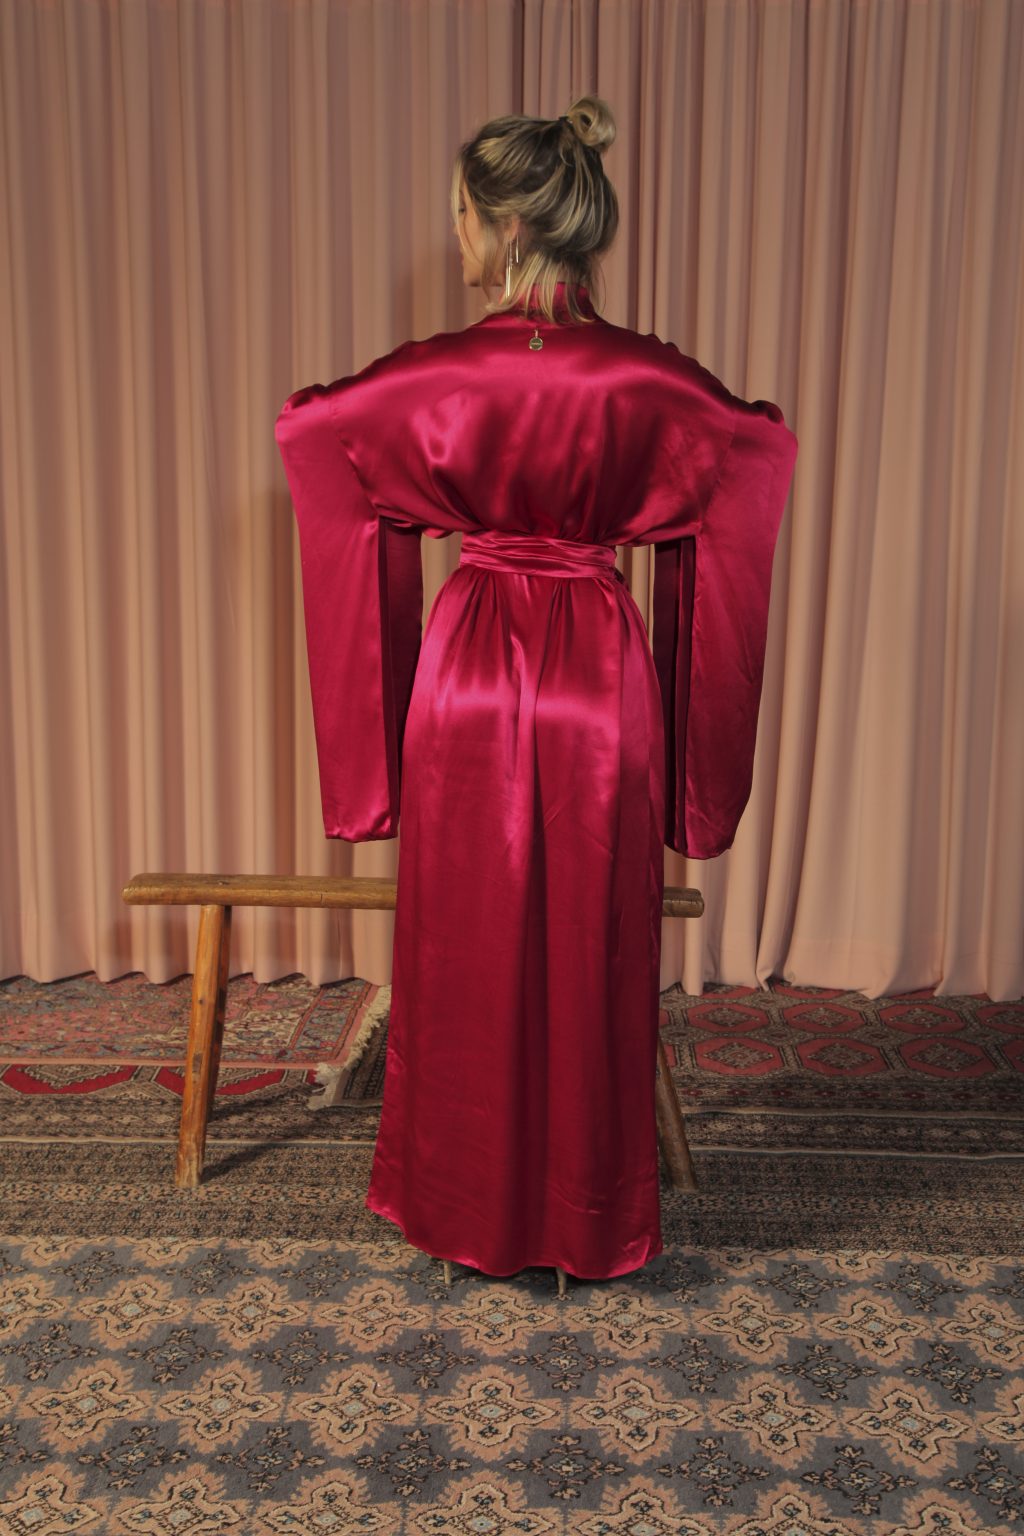 Mulher loira usando um kimono longo manga longa vermelho viscose faixa de amarração na cintura leveza elegância praticidade conforto maria sanz kimono quimono